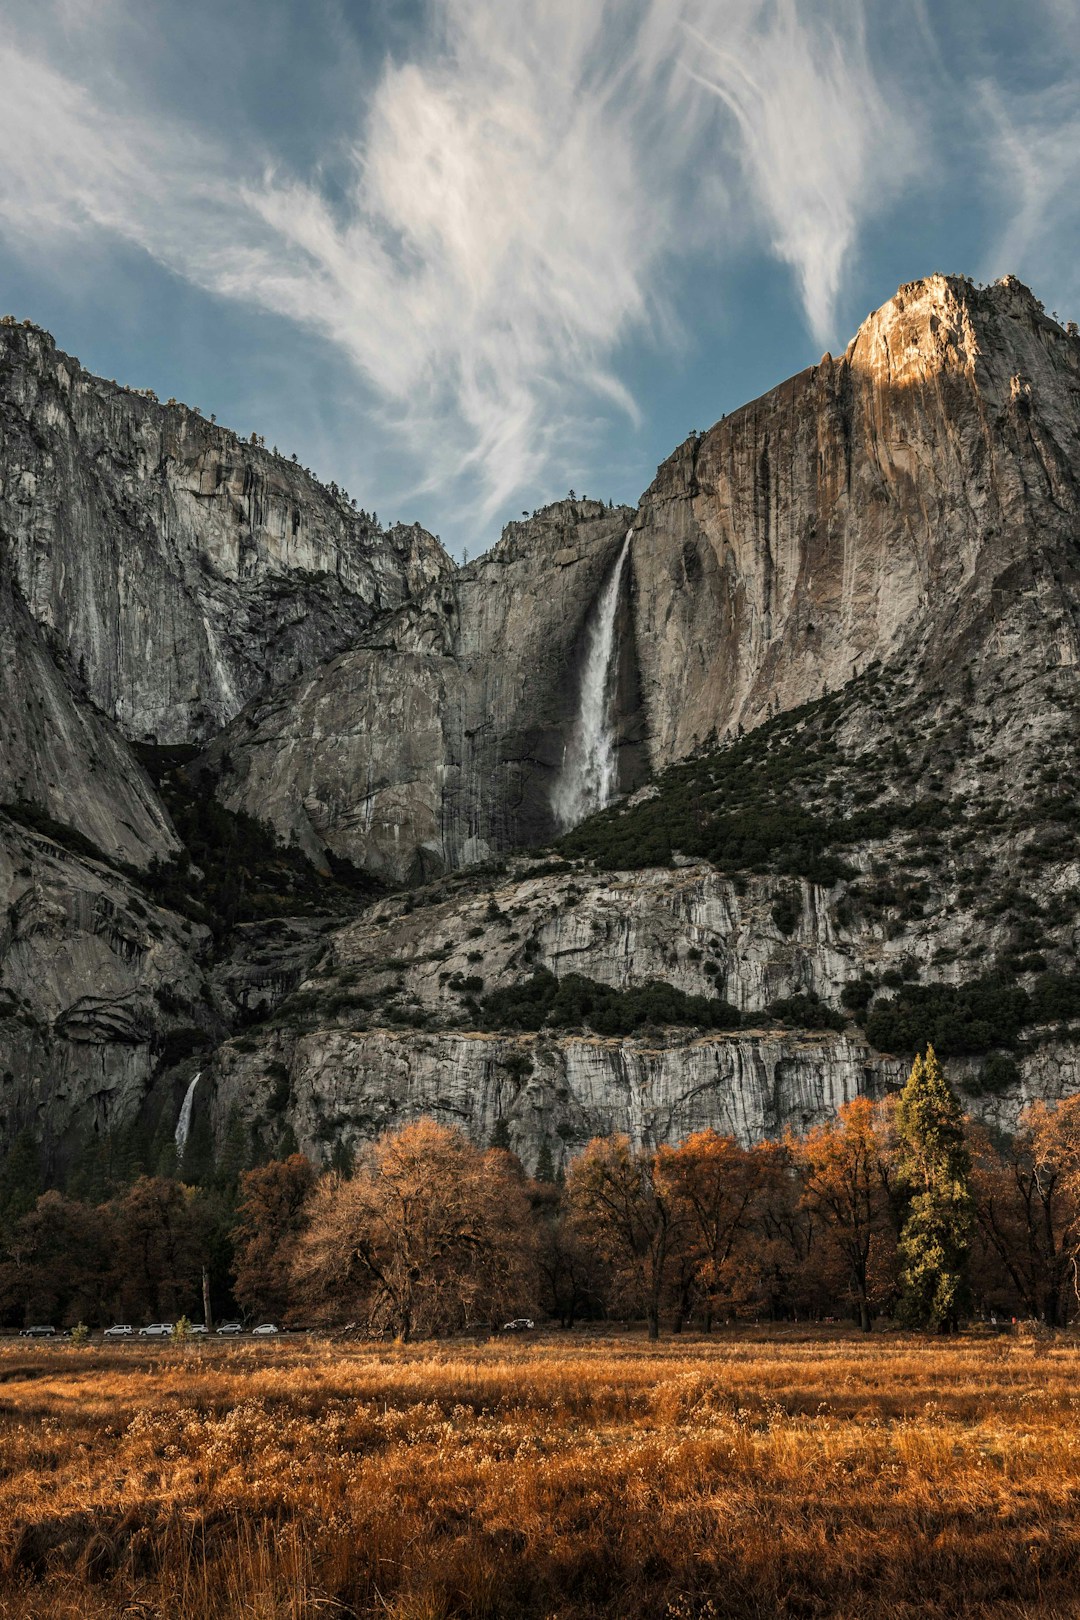 See the Yosemite Falls